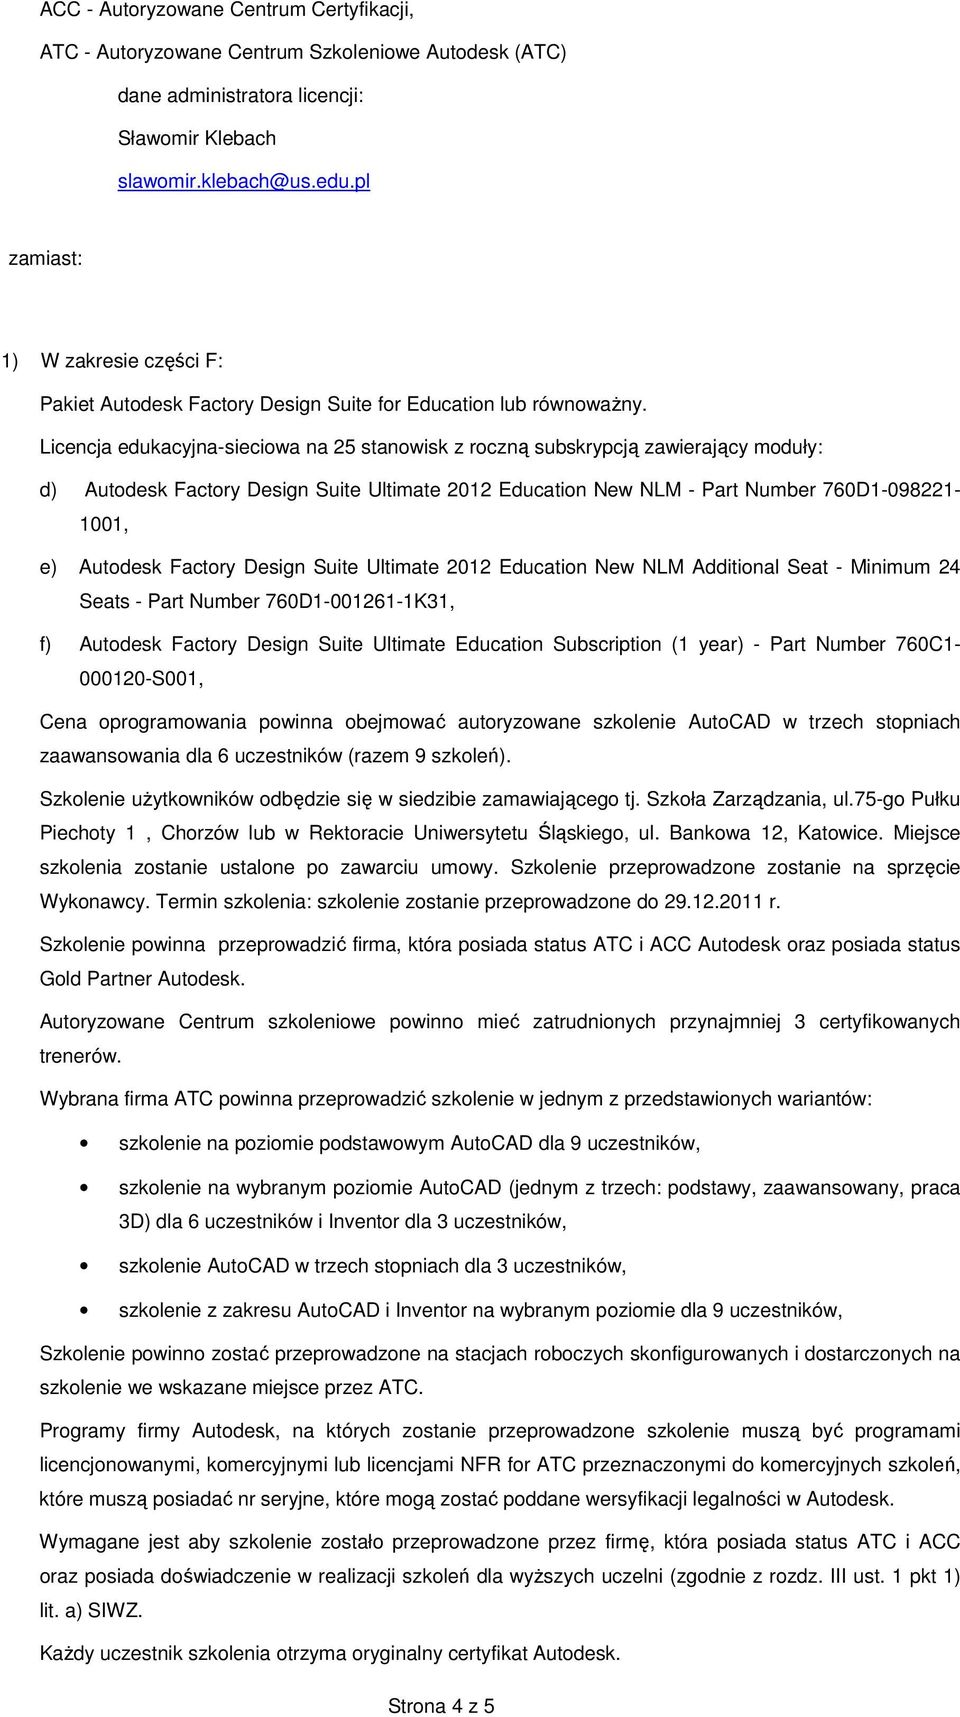 Licencja edukacyjna-sieciowa na 25 stanowisk z roczną subskrypcją zawierający moduły: d) Autodesk Factory Design Suite Ultimate 2012 Education New NLM - Part Number 760D1-098221- 1001, e) Autodesk